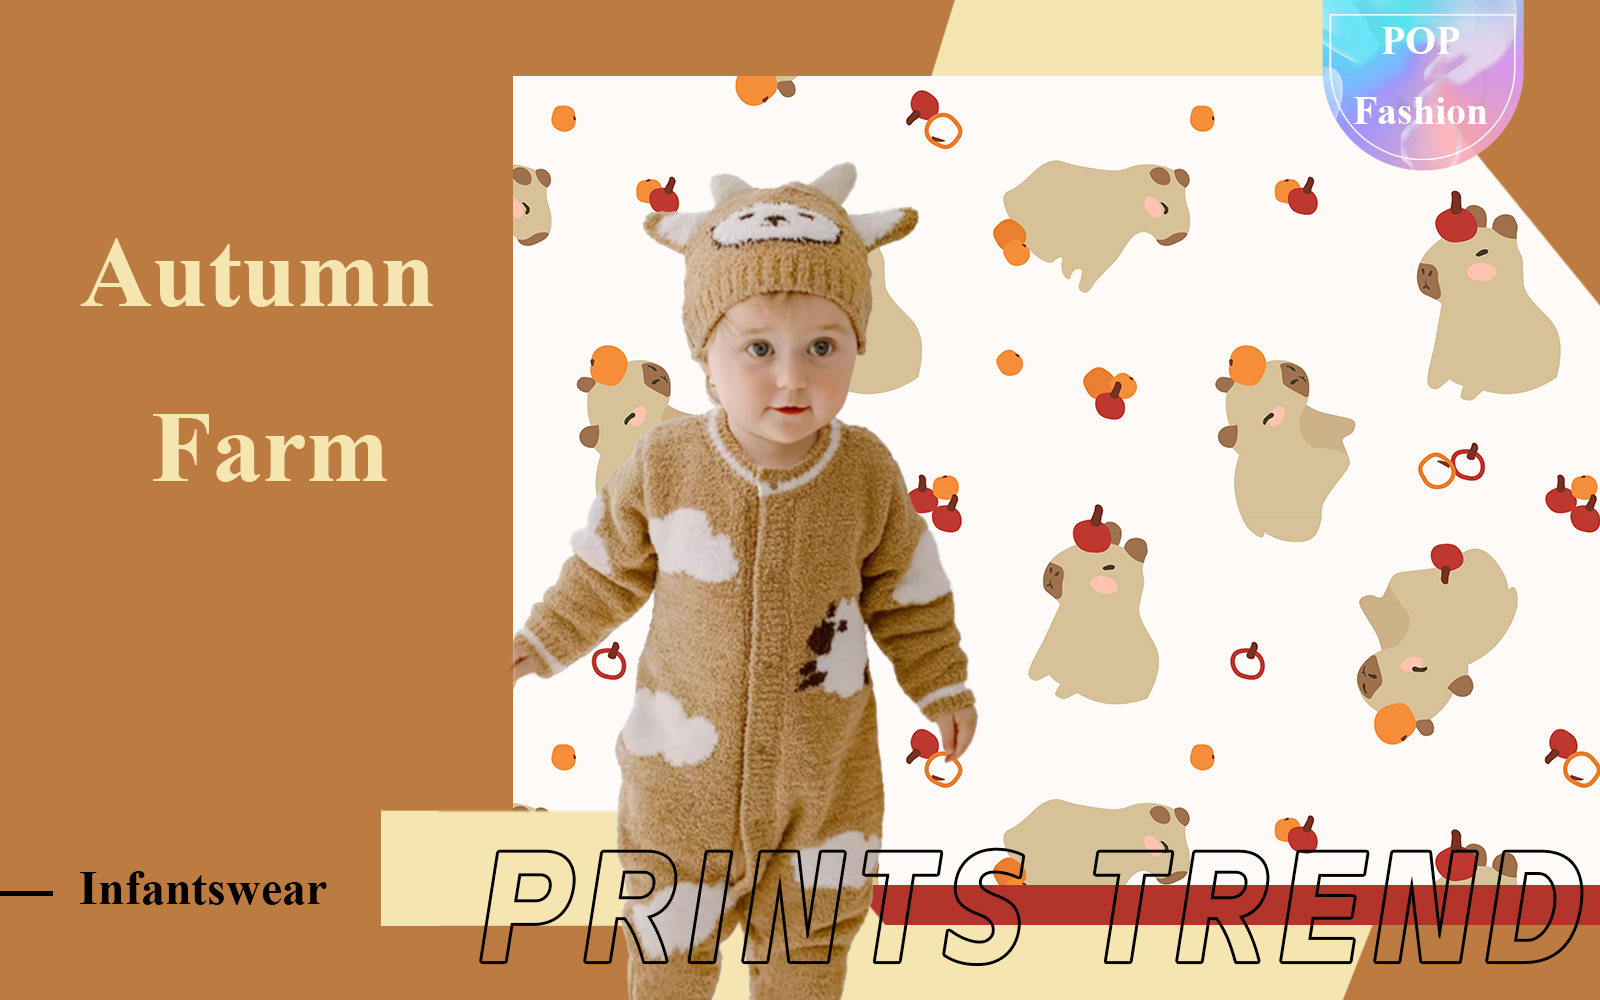 Autumn Farm -- The Pattern Trend for Infantswear